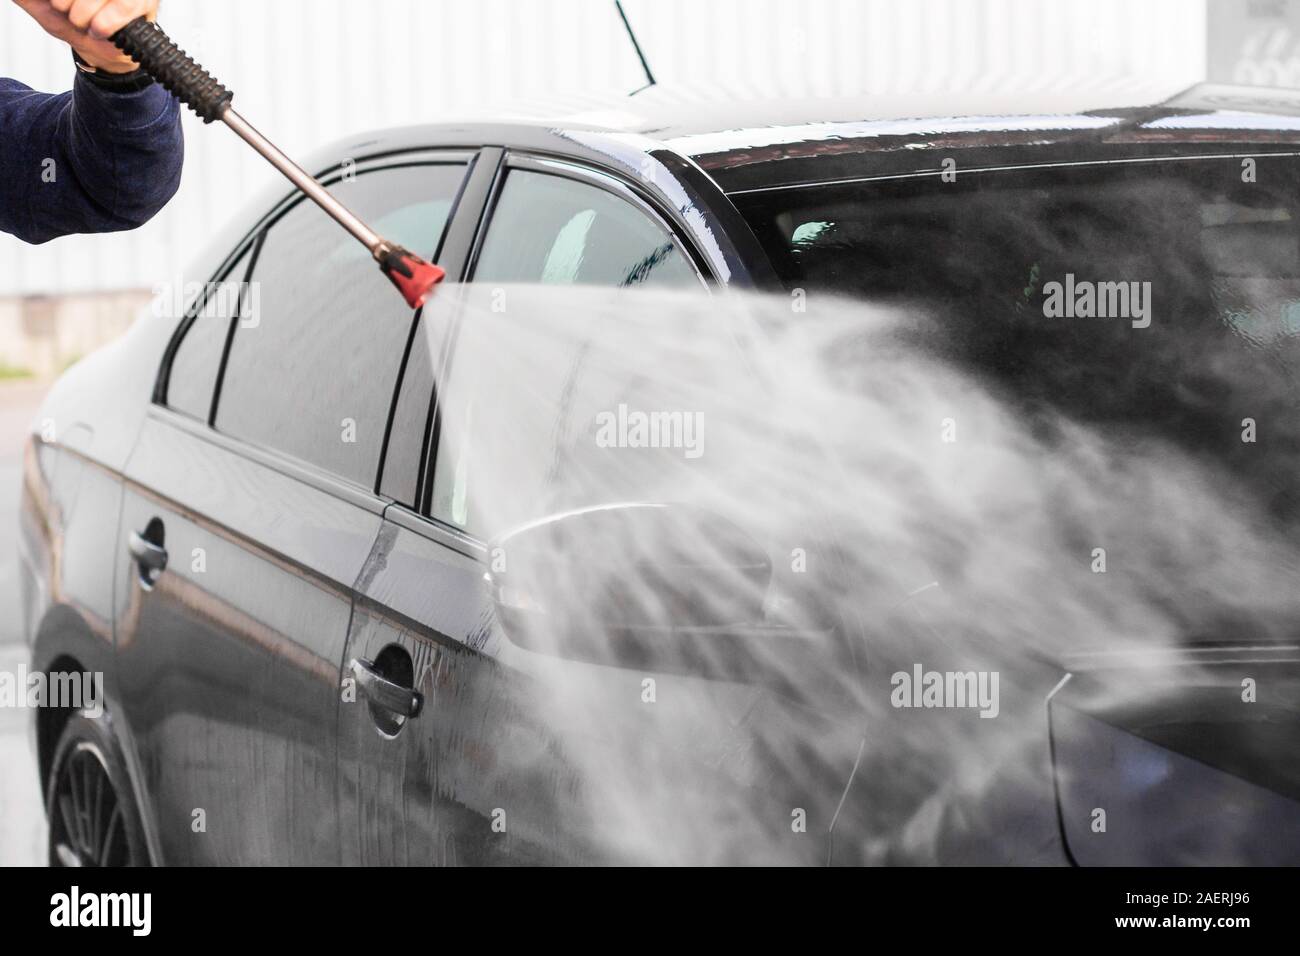 Un homme se lave une voiture à self service de lavage de voiture. Véhicule haute pression machine lave-glace avec de l'eau propre. Équipement de lavage de voiture Banque D'Images